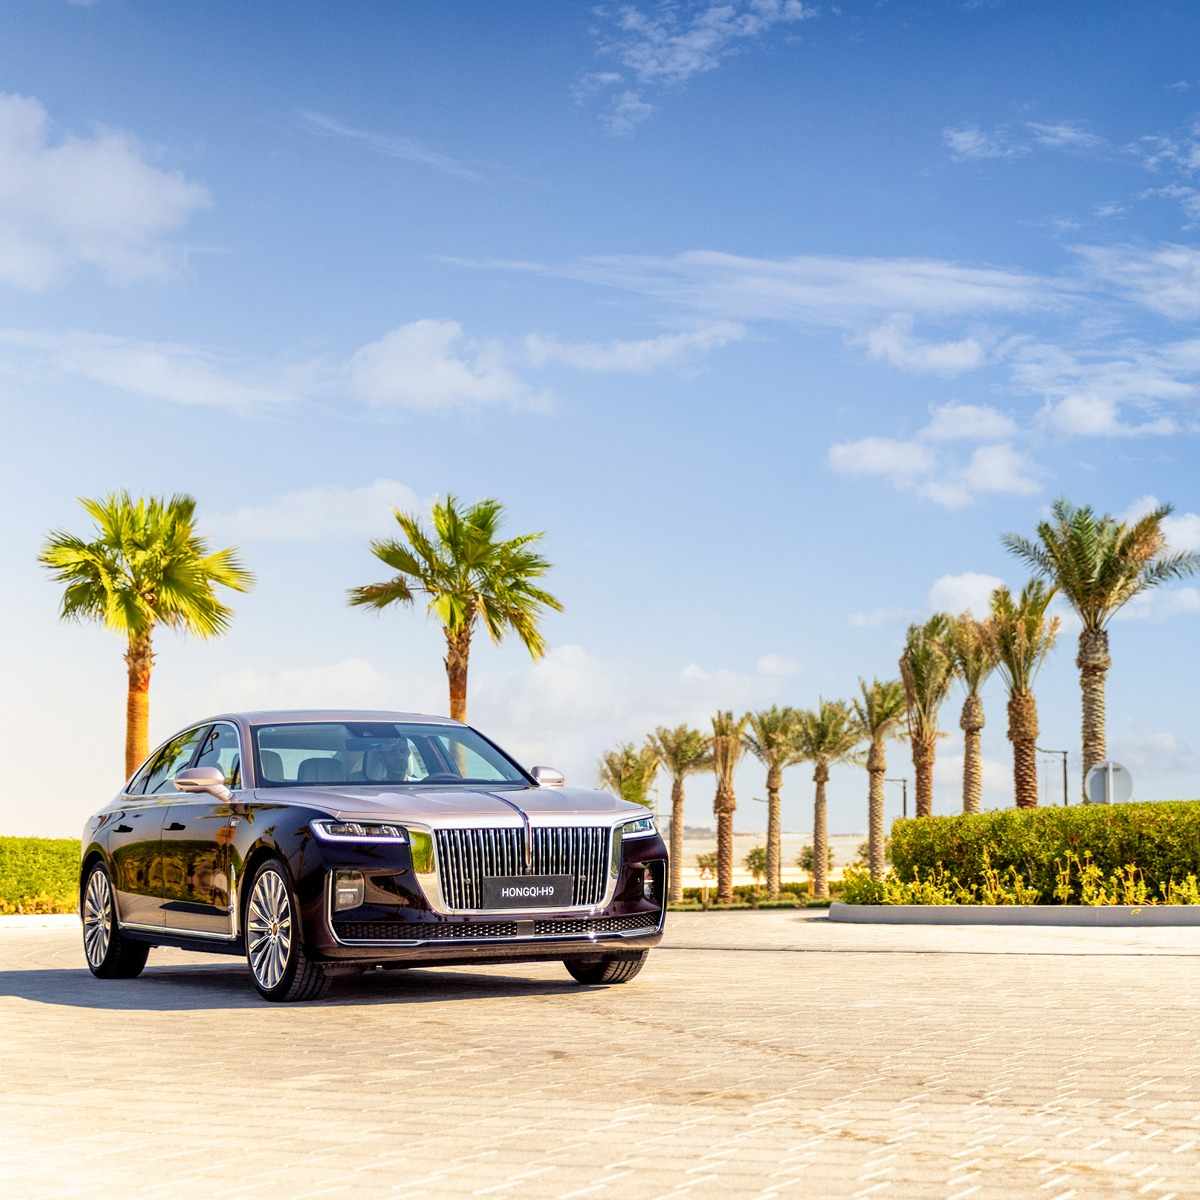 bahrain,campaign,hongqi,luxury,car